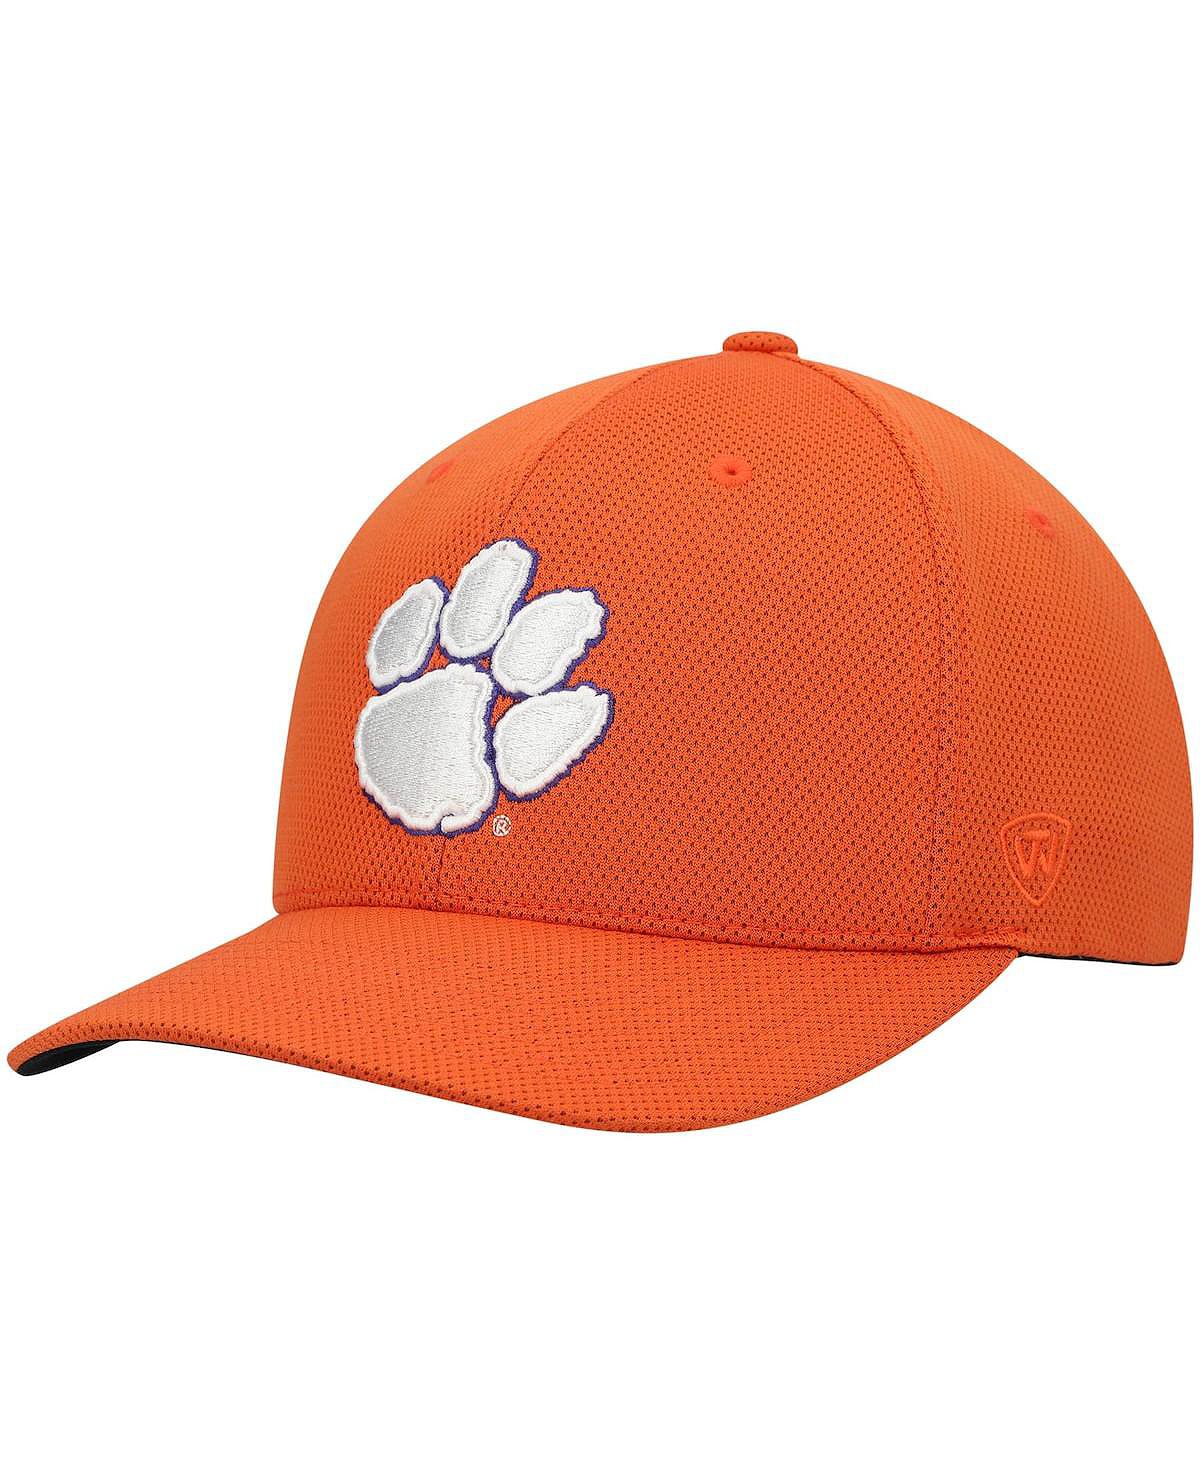 Мужская оранжевая кепка с логотипом Clemson Tigers Reflex Flex Top of the World